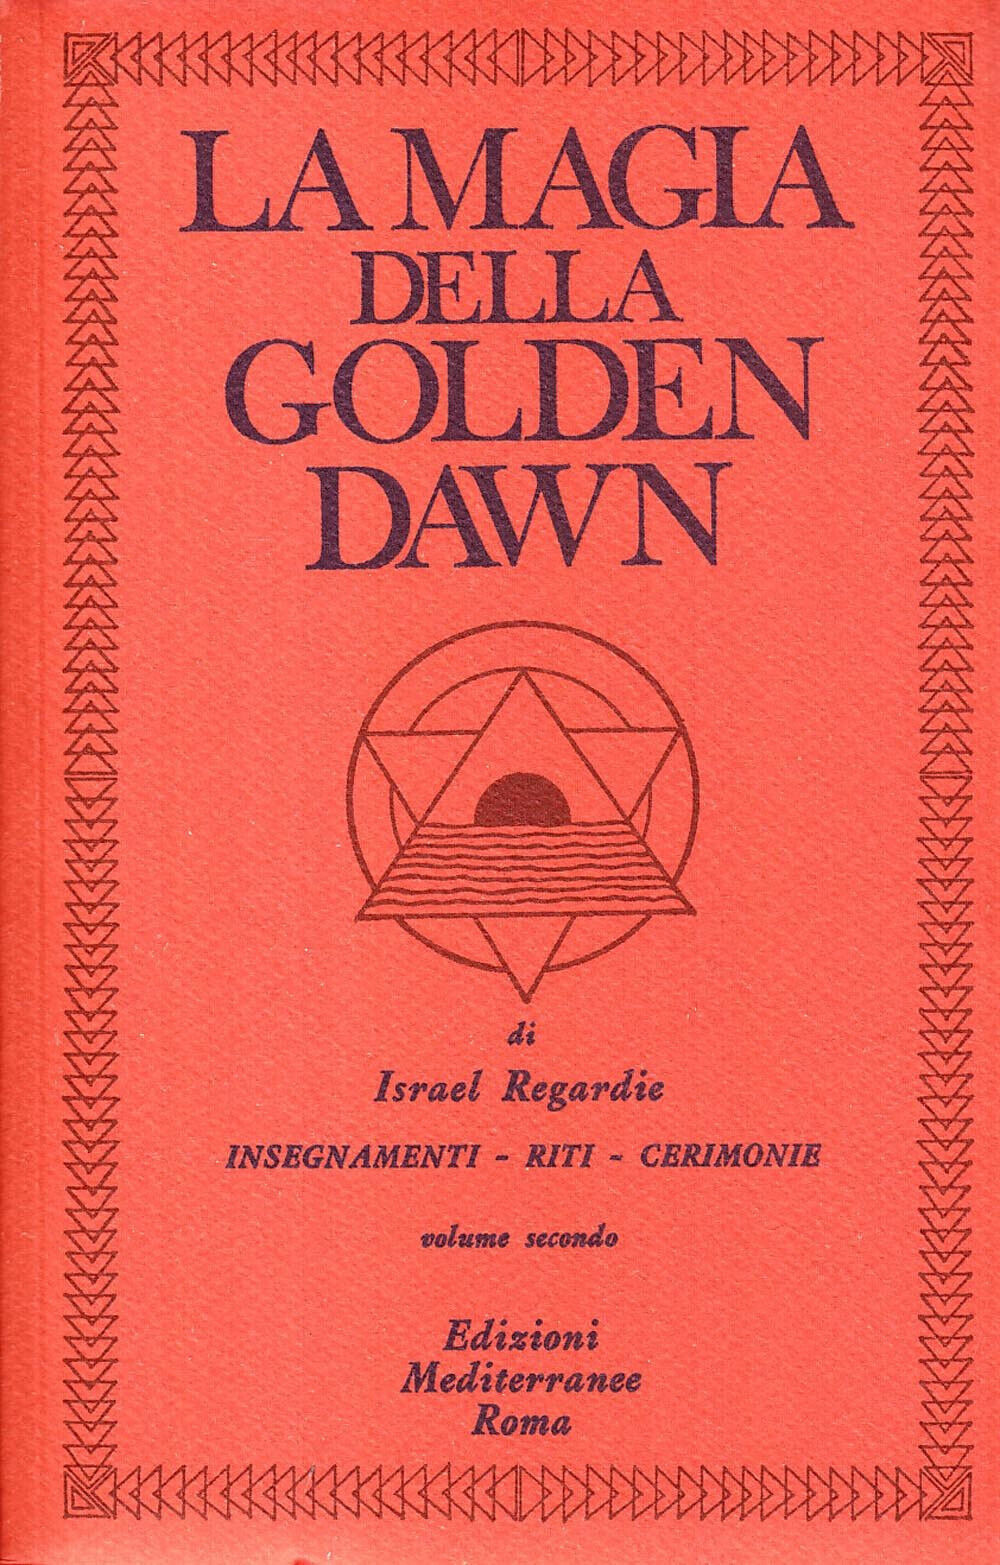 La magia della Golden Dawn vol.2 - Israel Regardie - Mediterranee, 1983 libro usato